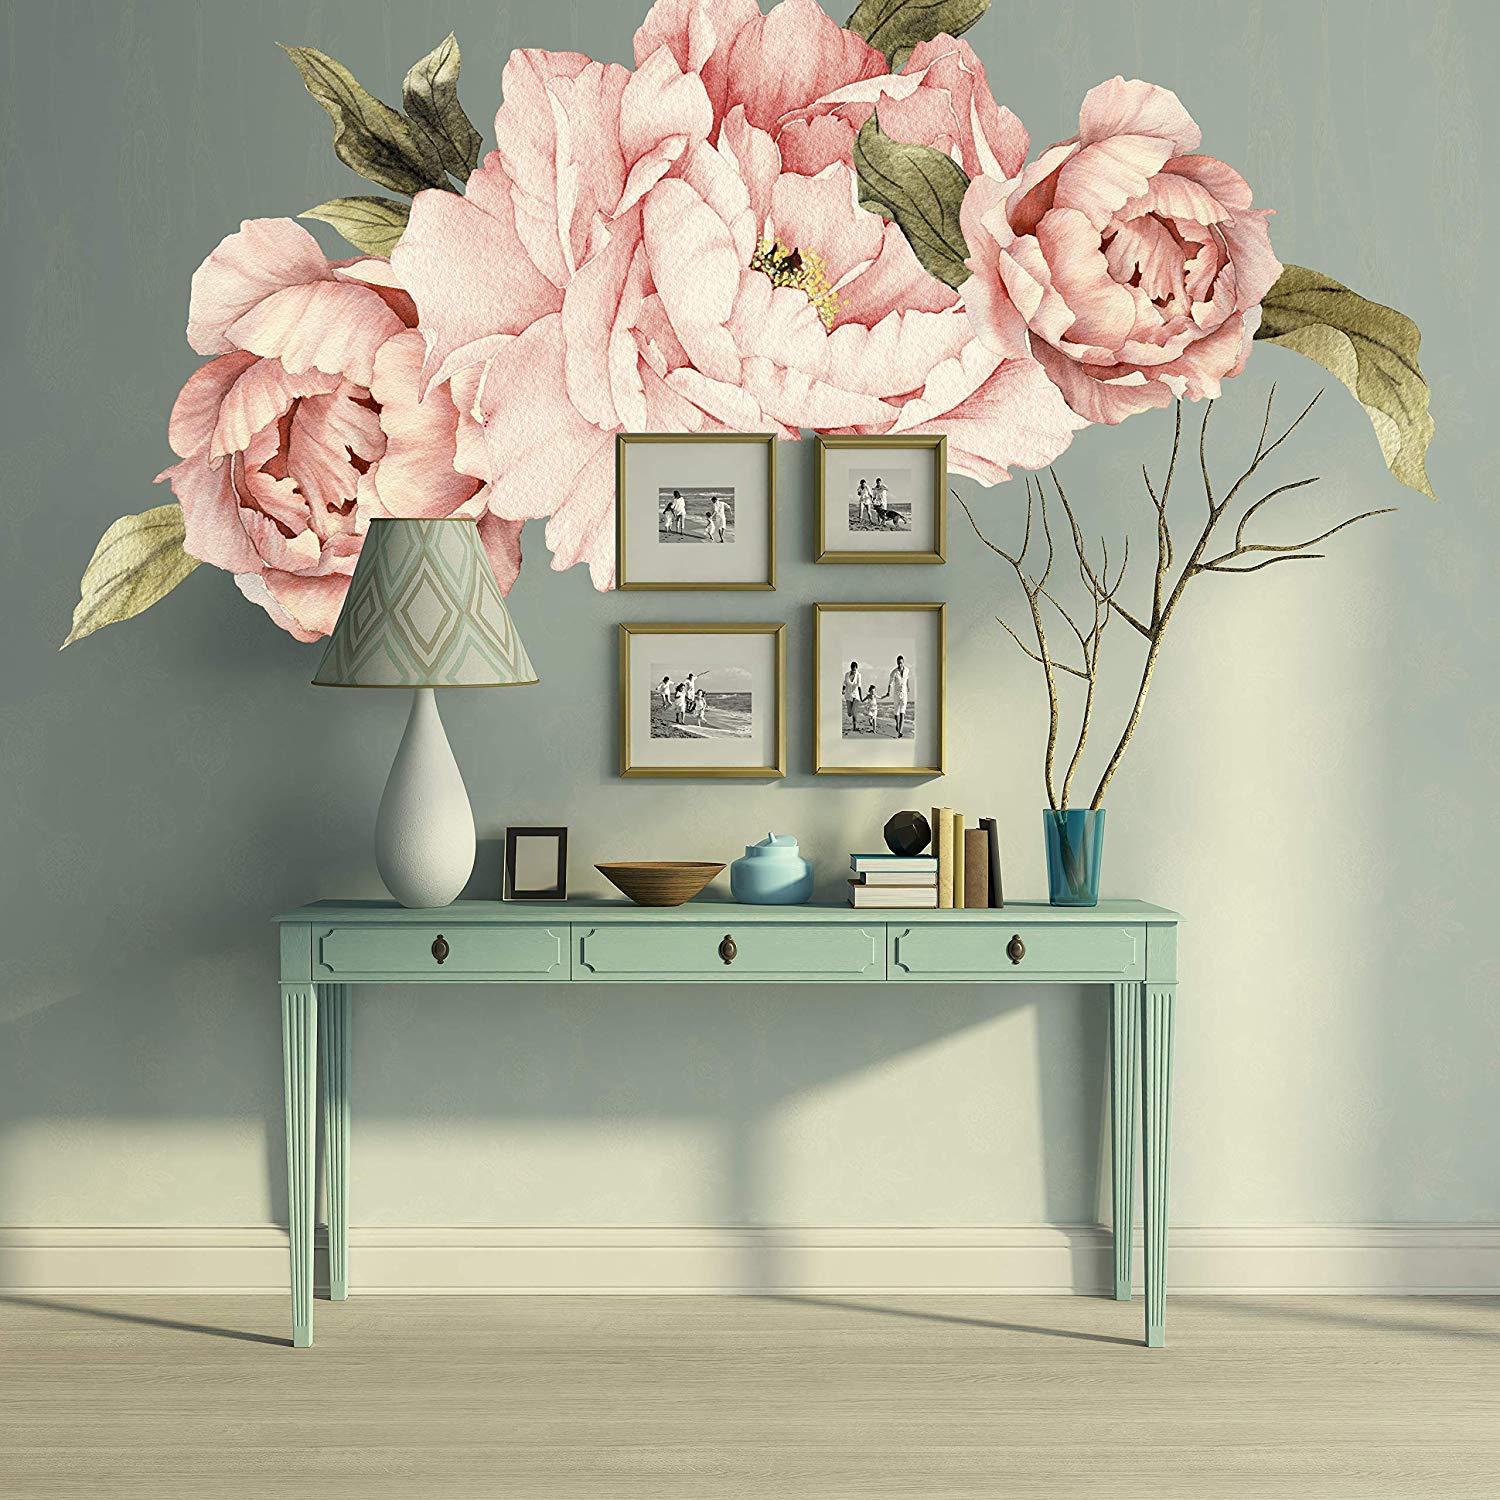 Murwall Pink Peonies Wall Decals Floral Wall Decal - Villeroy & Boch Schreibtisch , HD Wallpaper & Backgrounds